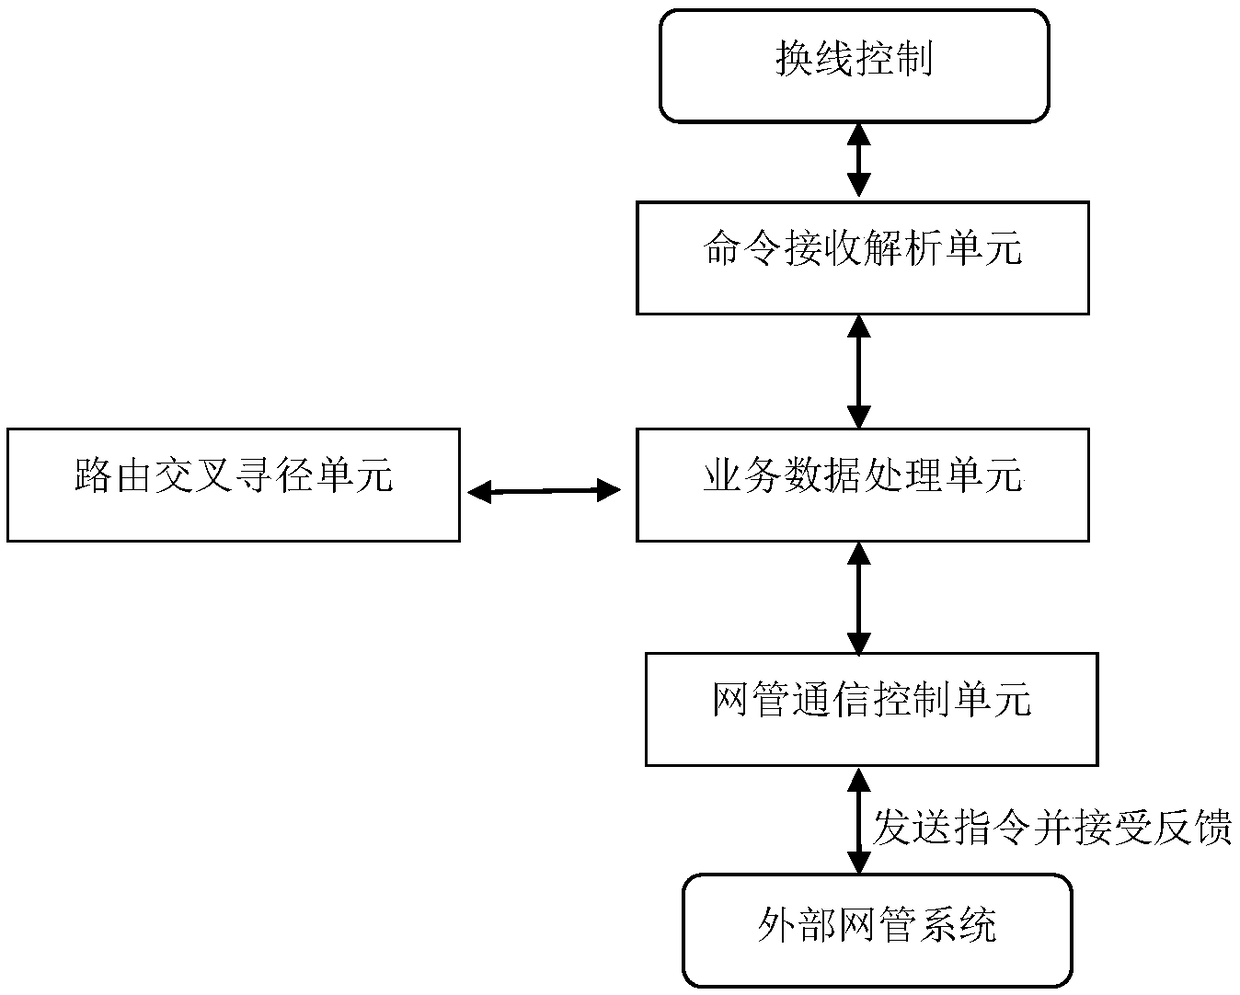 Multi-device cross-exchange control method